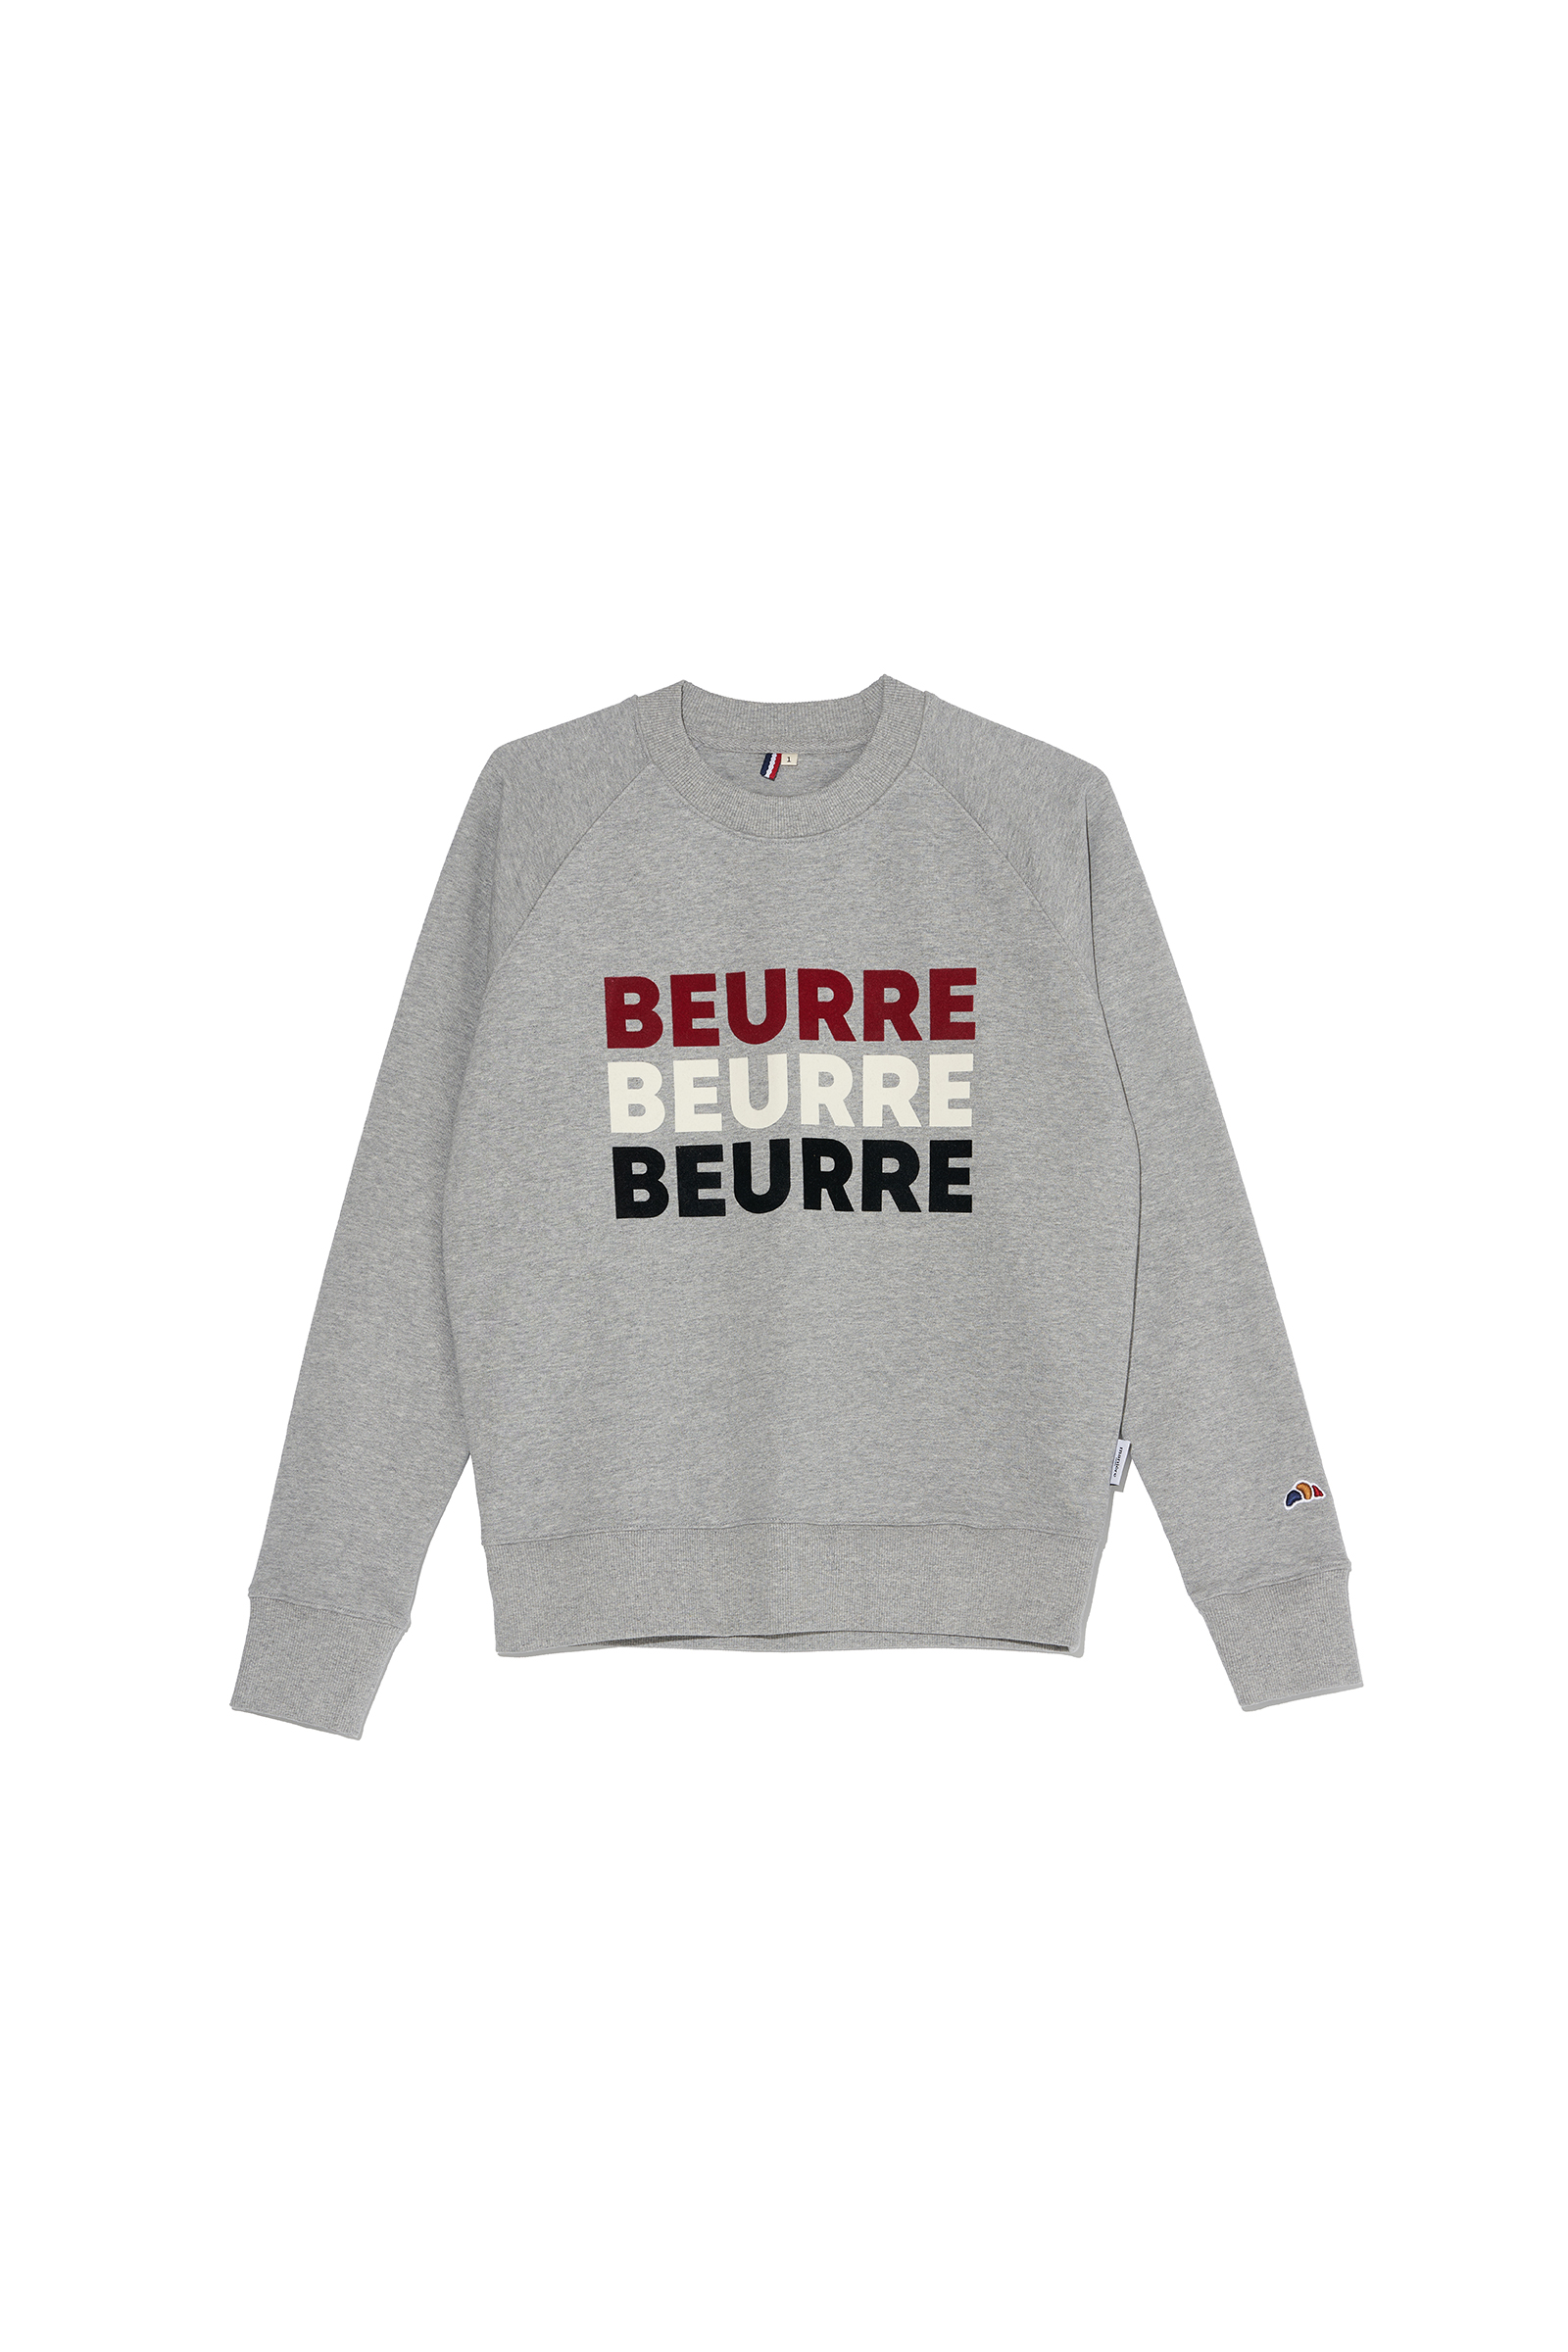 ep.6 BEURRE sweatshirt